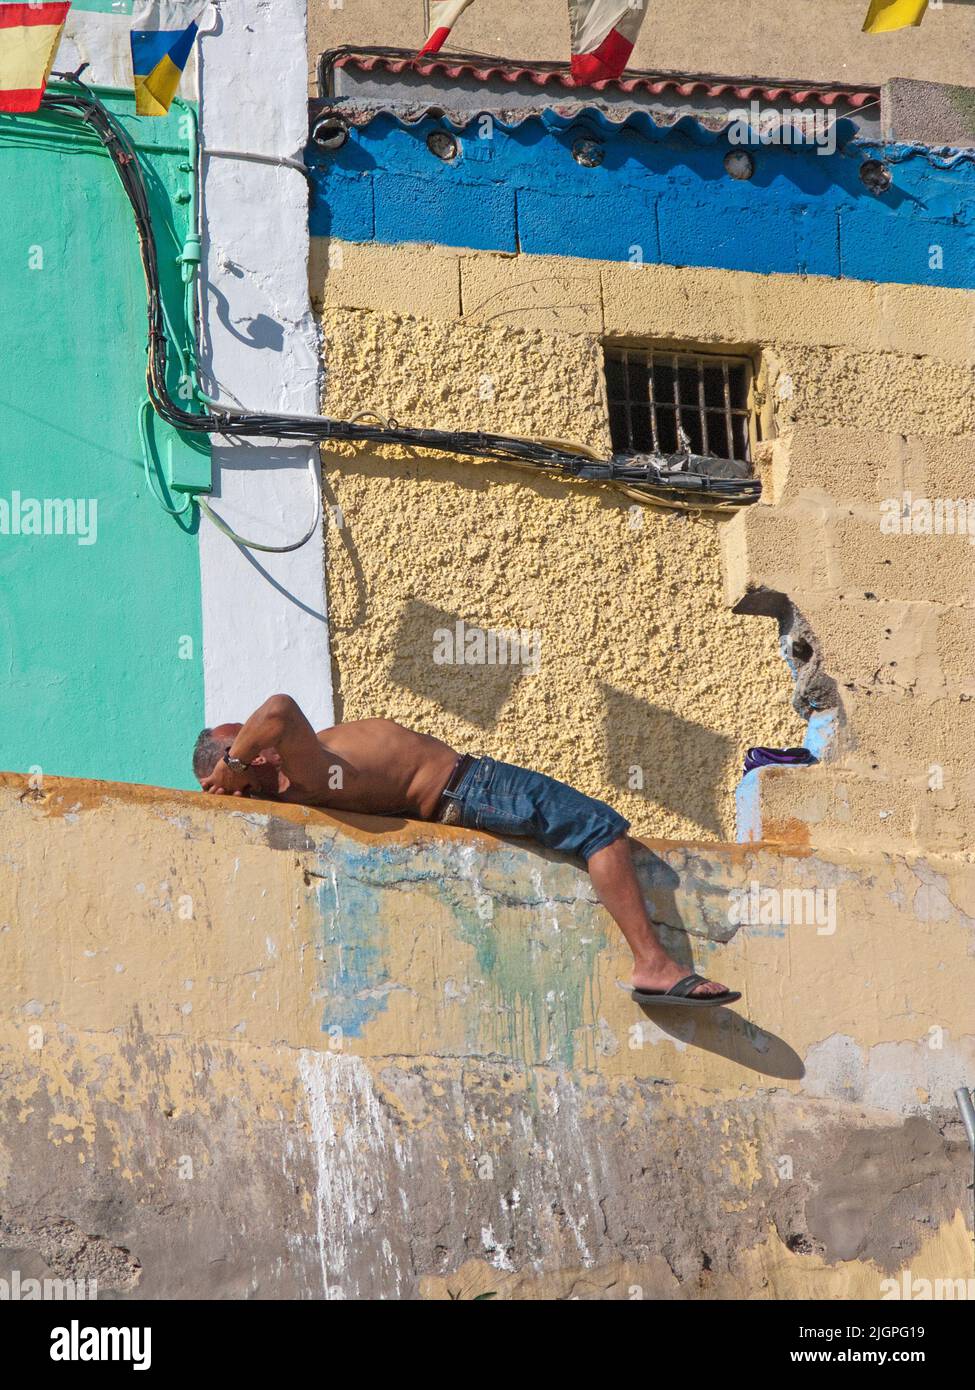 Uomo che dorme di fronte ad una casa, disrict San Nicolas, Las Palmas, Grand Canary, isole Canarie, Spagna, Europa Foto Stock